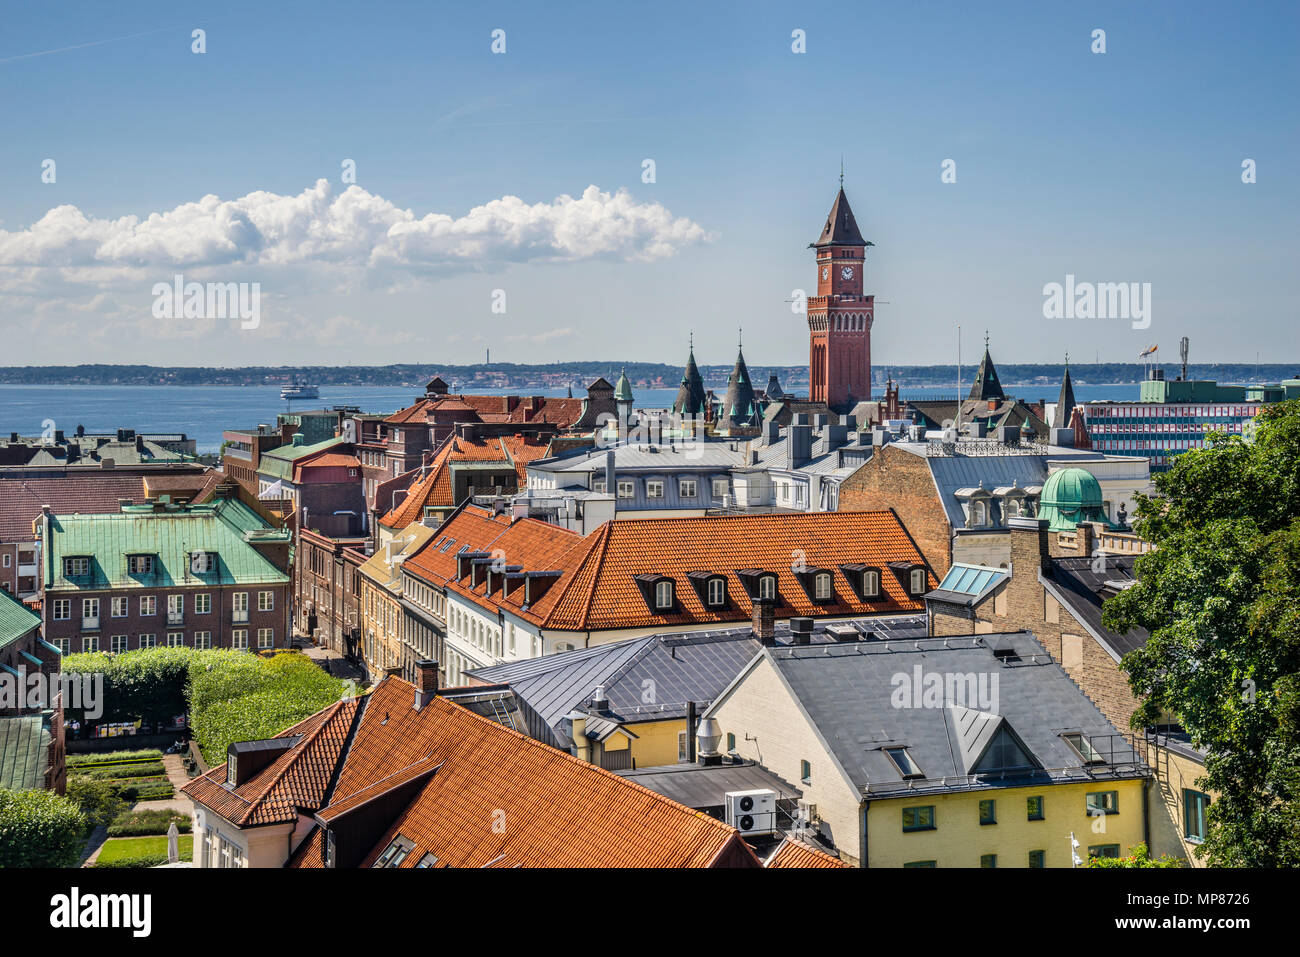 Blick über die Dächer der Ostsee Küstenstadt Helsingborg aus dem Kärnan mittelalterliche Festung mit Turm der Radhuset, die helsingborg Ci Stockfoto